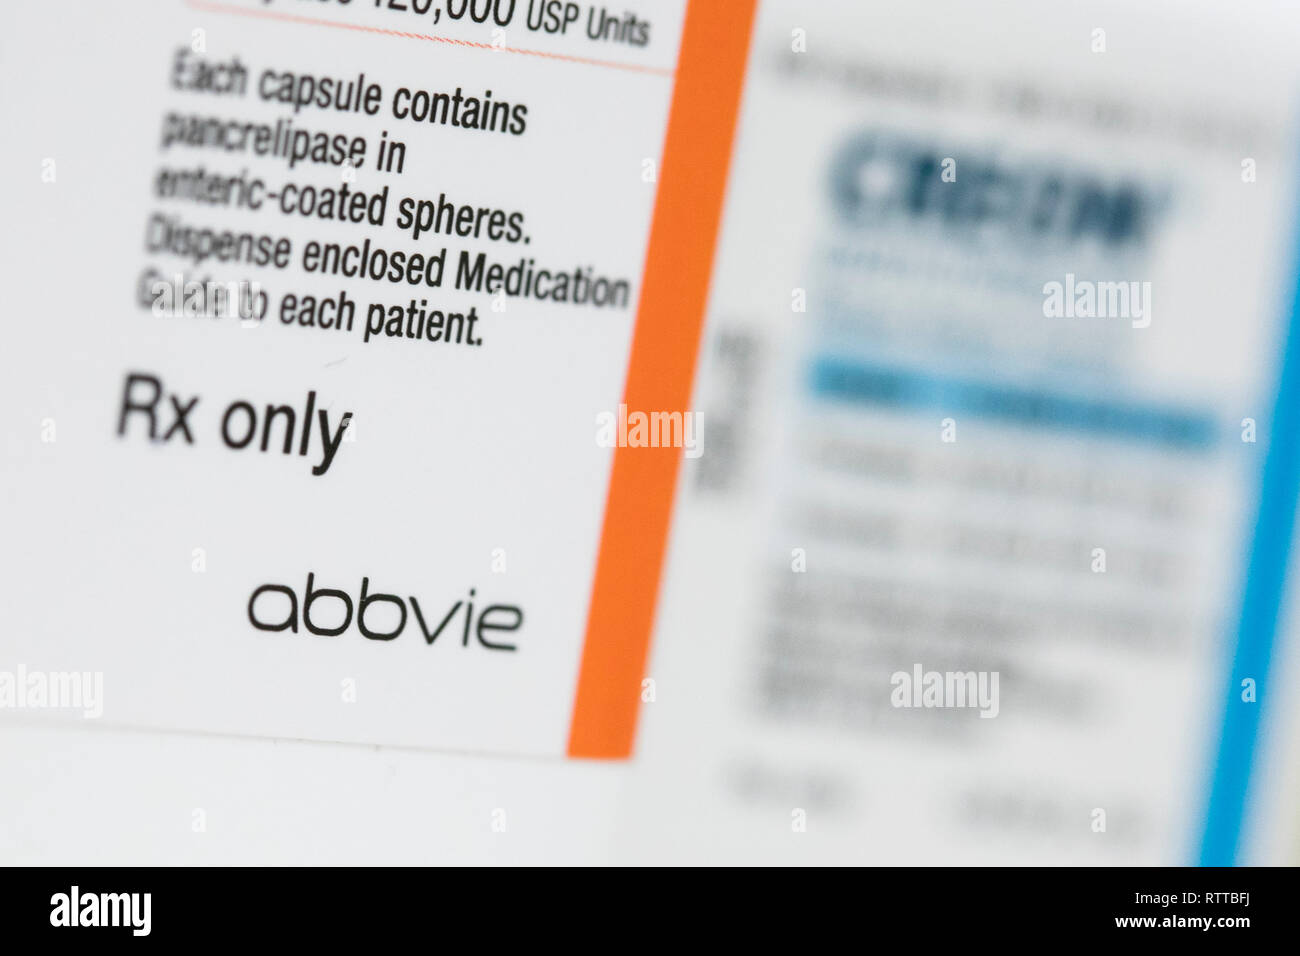 Abbvie un logo est visible sur l'emballage de produits pharmaceutiques sur ordonnance photographié dans une pharmacie. Banque D'Images